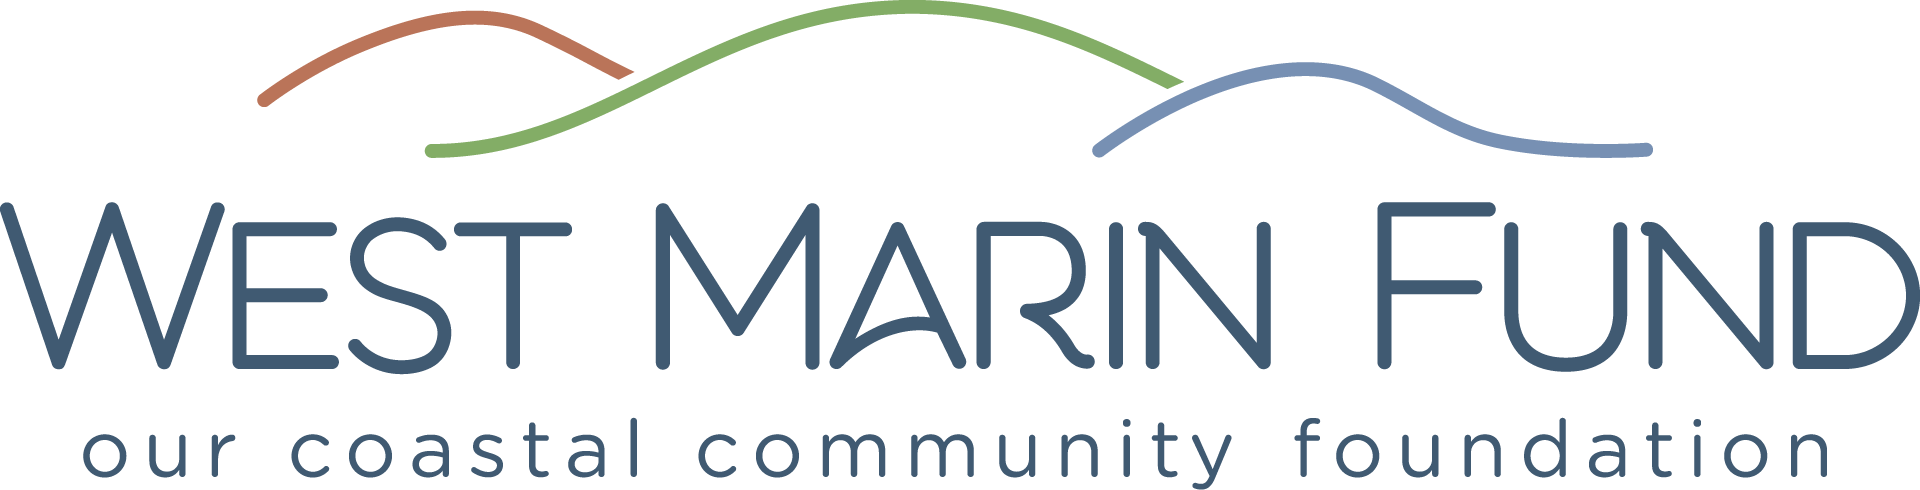 West Marin Fund